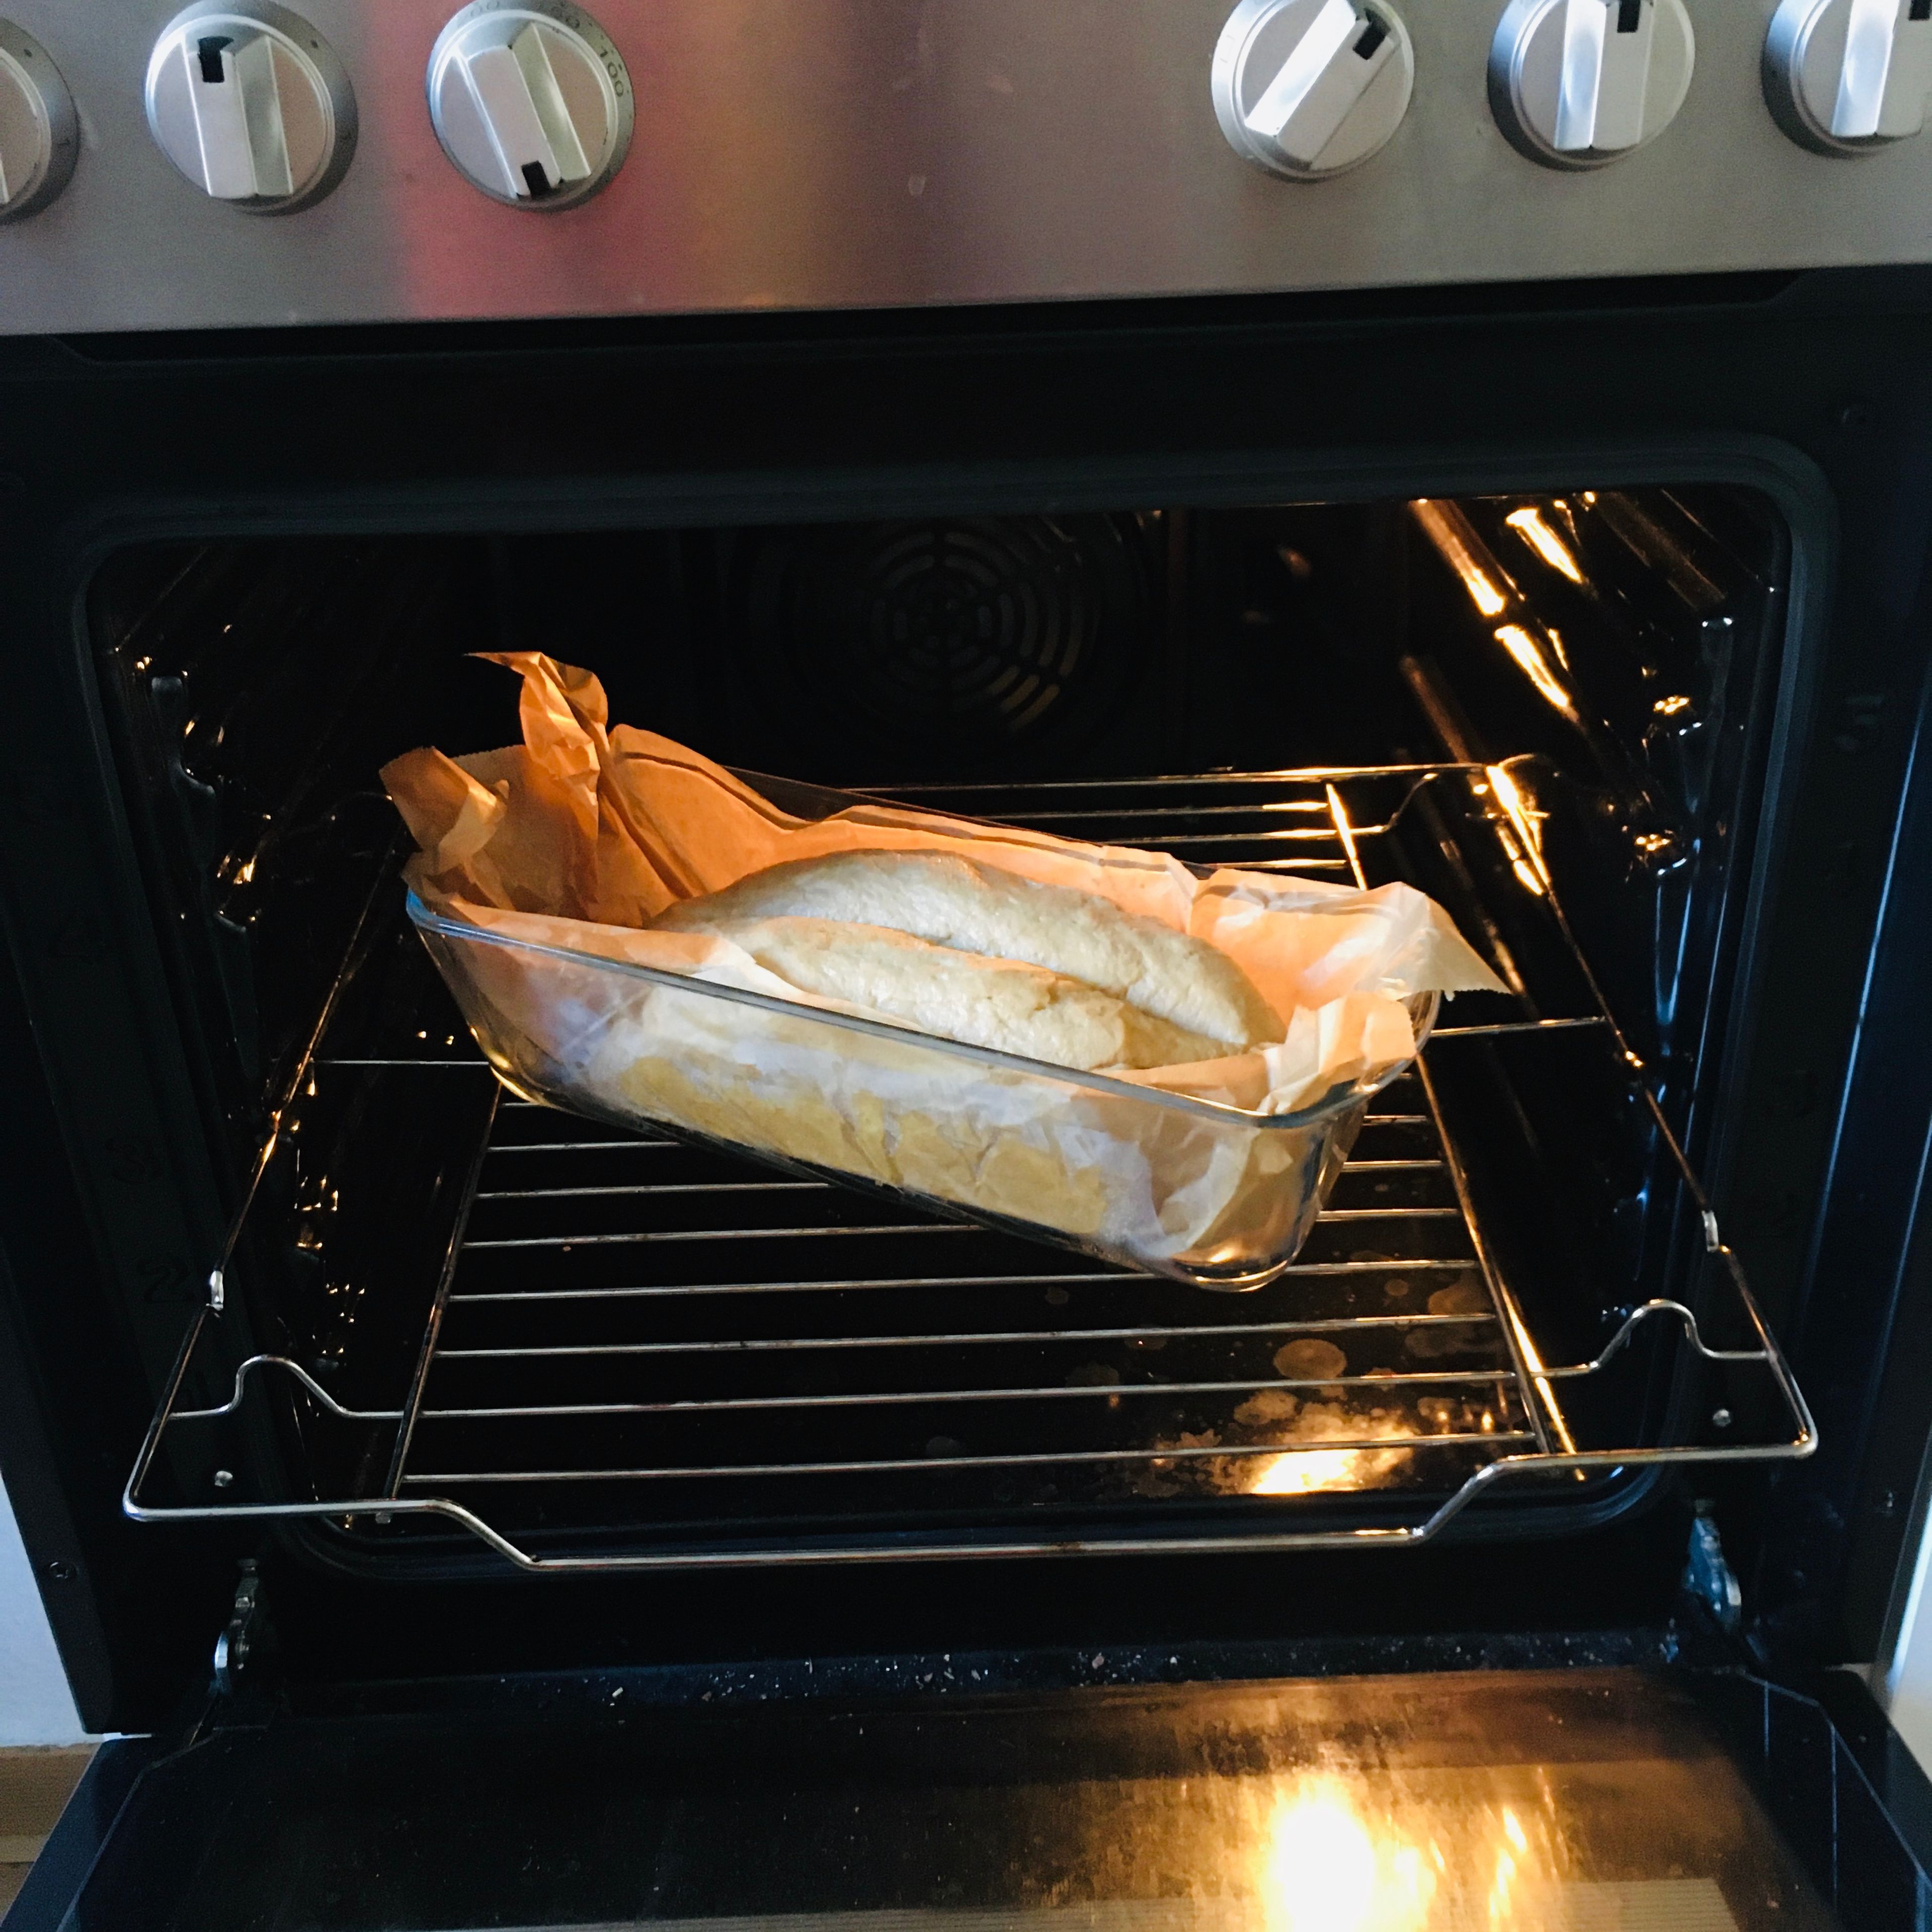 Das Brot für etwa 25min in den Backofen schieben. Durch die Stäbchenprobe kontrollieren, wann es fertig ist.